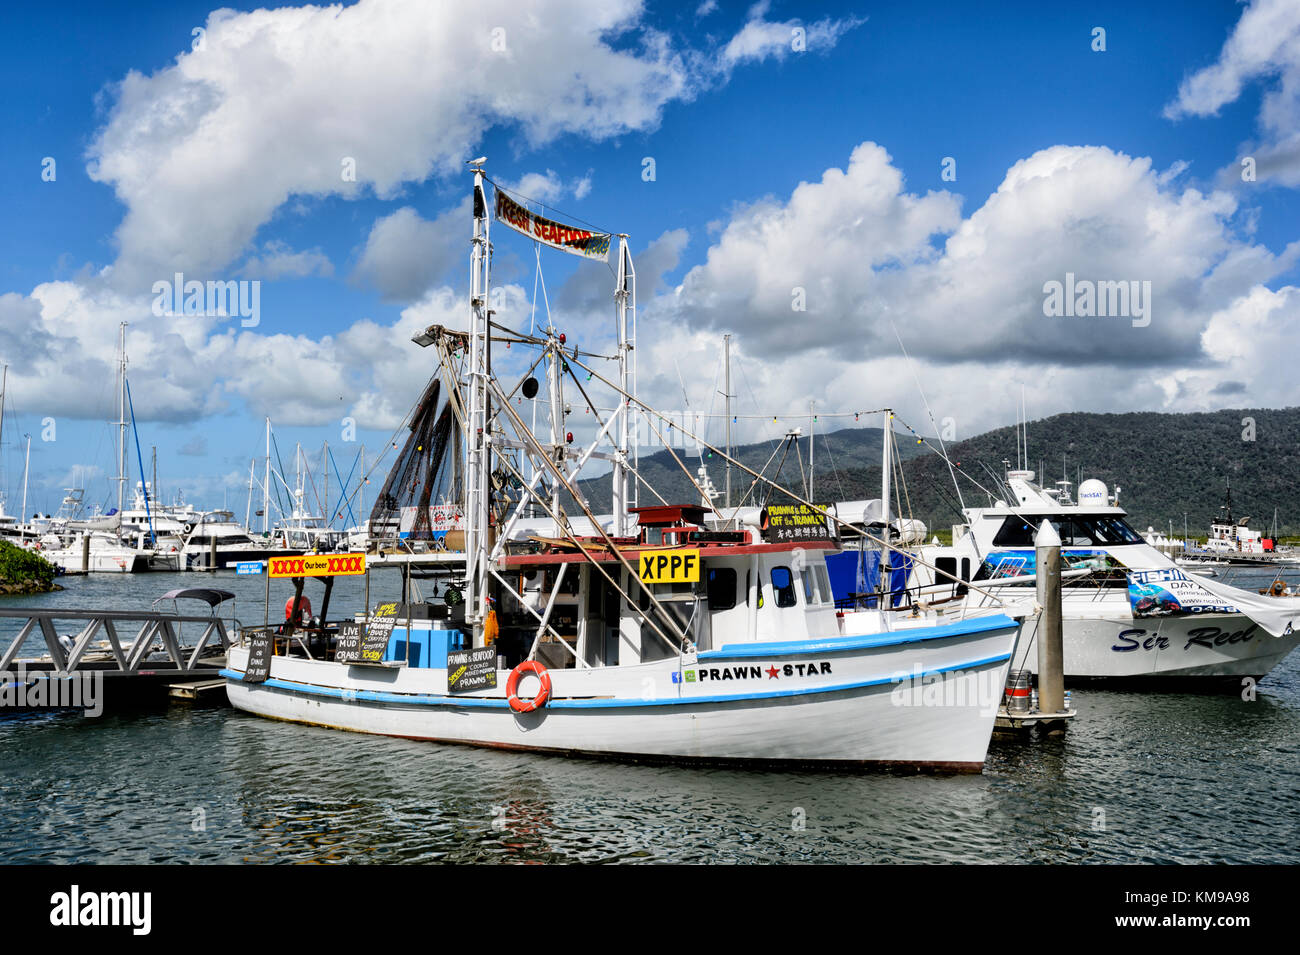 La star de crevettes, un chalutier de vendre des fruits de mer ou manger à bord de quai, le Marlin, Cairns, Far North Queensland, Queensland, Australie, FNQ Banque D'Images